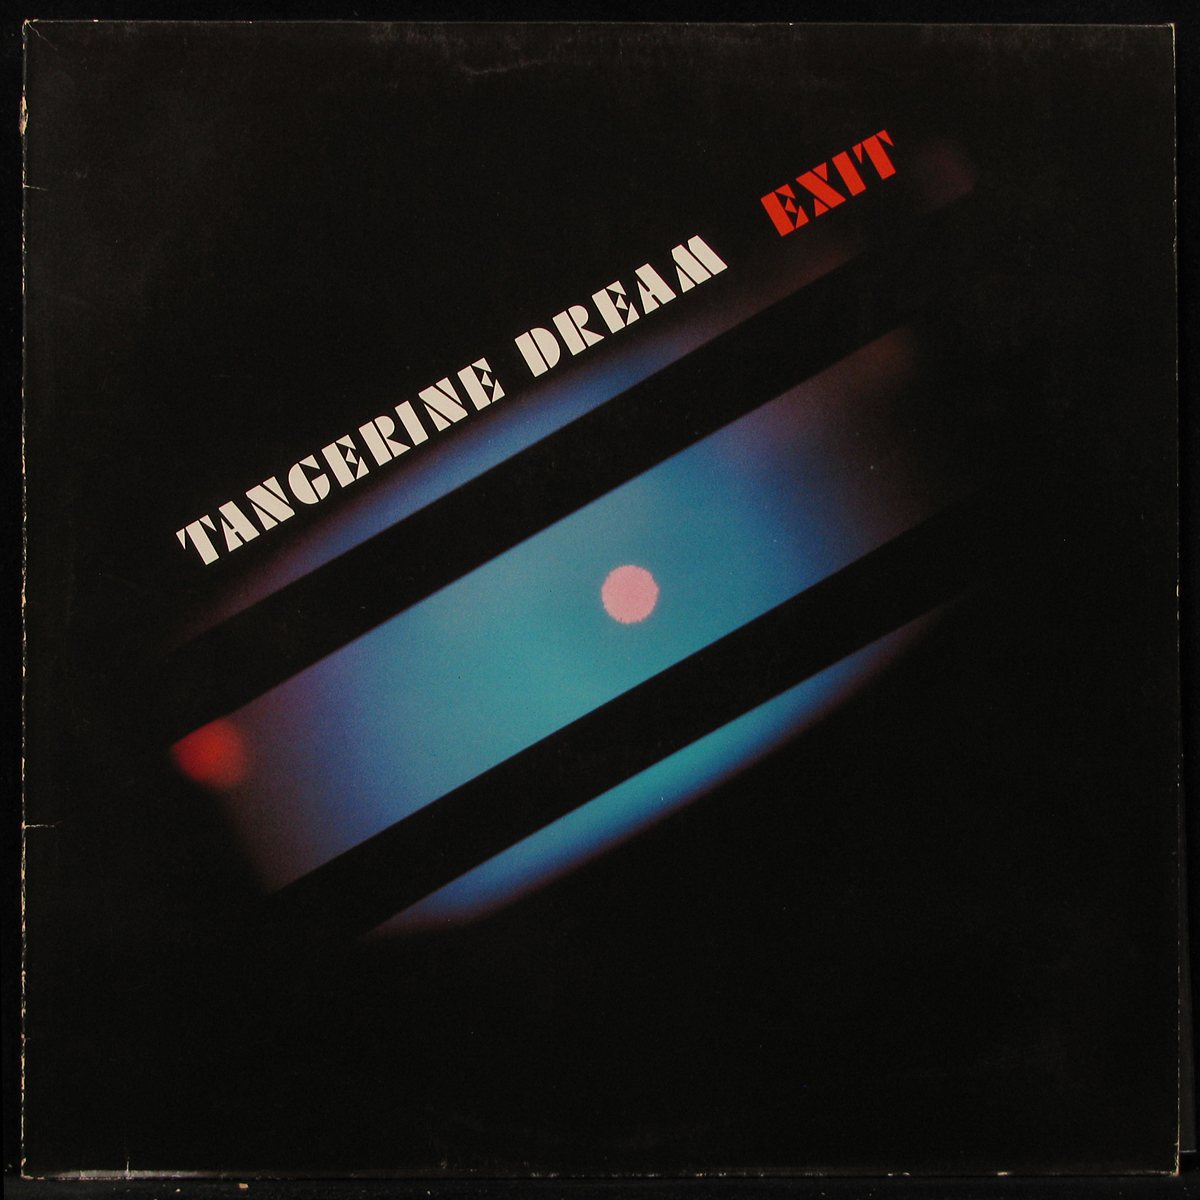 LP Tangerine Dream — Exit фото